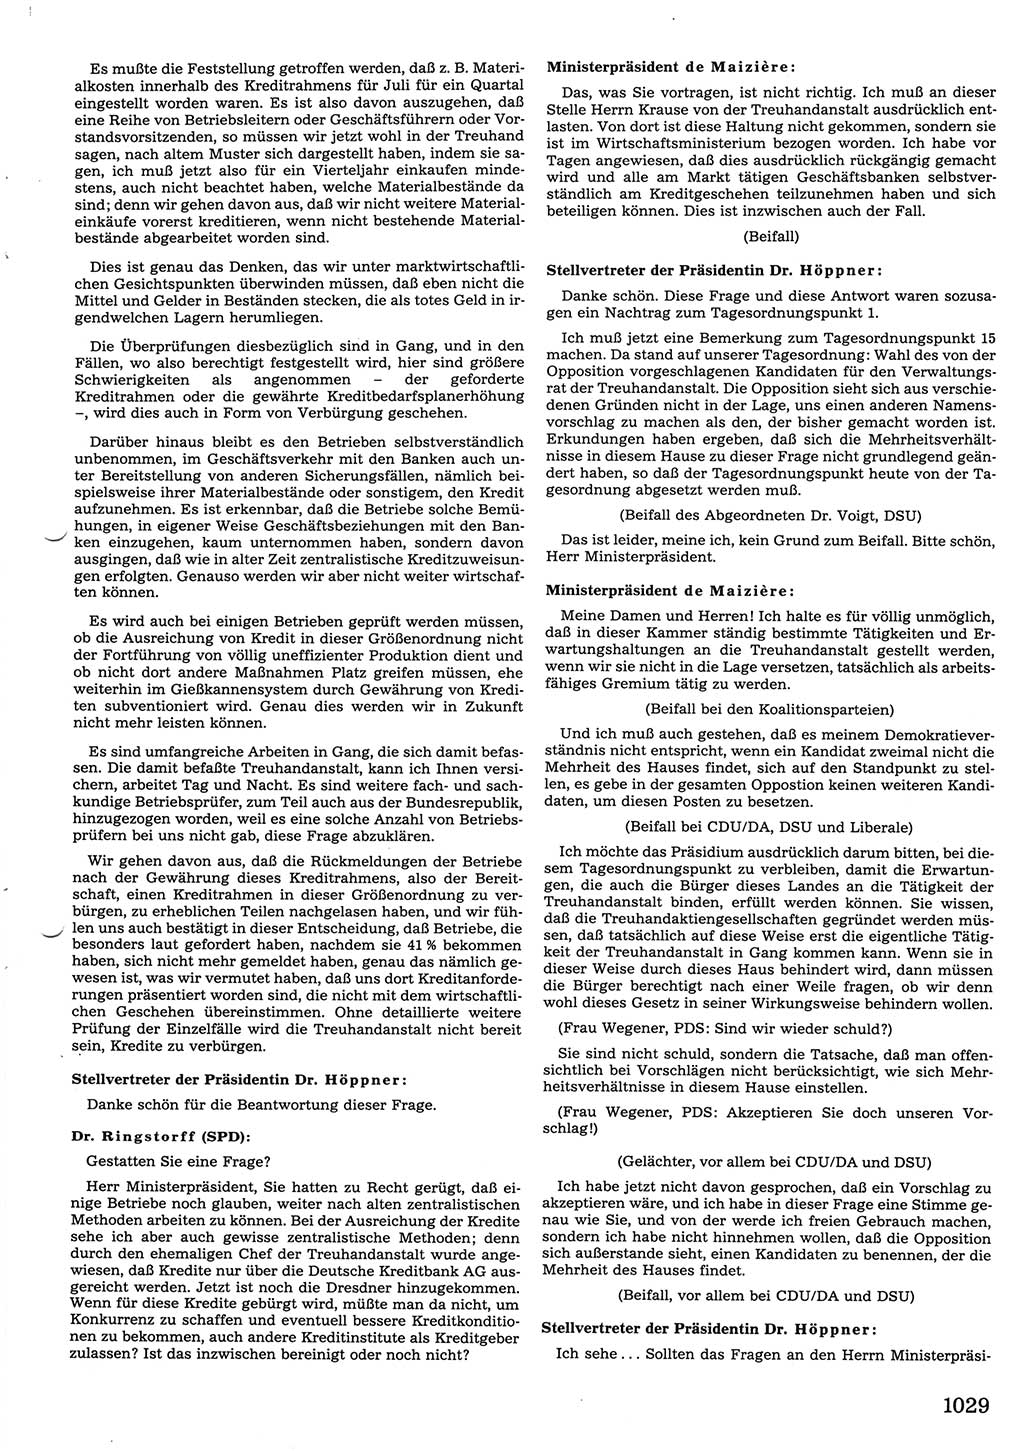 Tagungen der Volkskammer (VK) der Deutschen Demokratischen Republik (DDR), 10. Wahlperiode 1990, Seite 1029 (VK. DDR 10. WP. 1990, Prot. Tg. 1-38, 5.4.-2.10.1990, S. 1029)